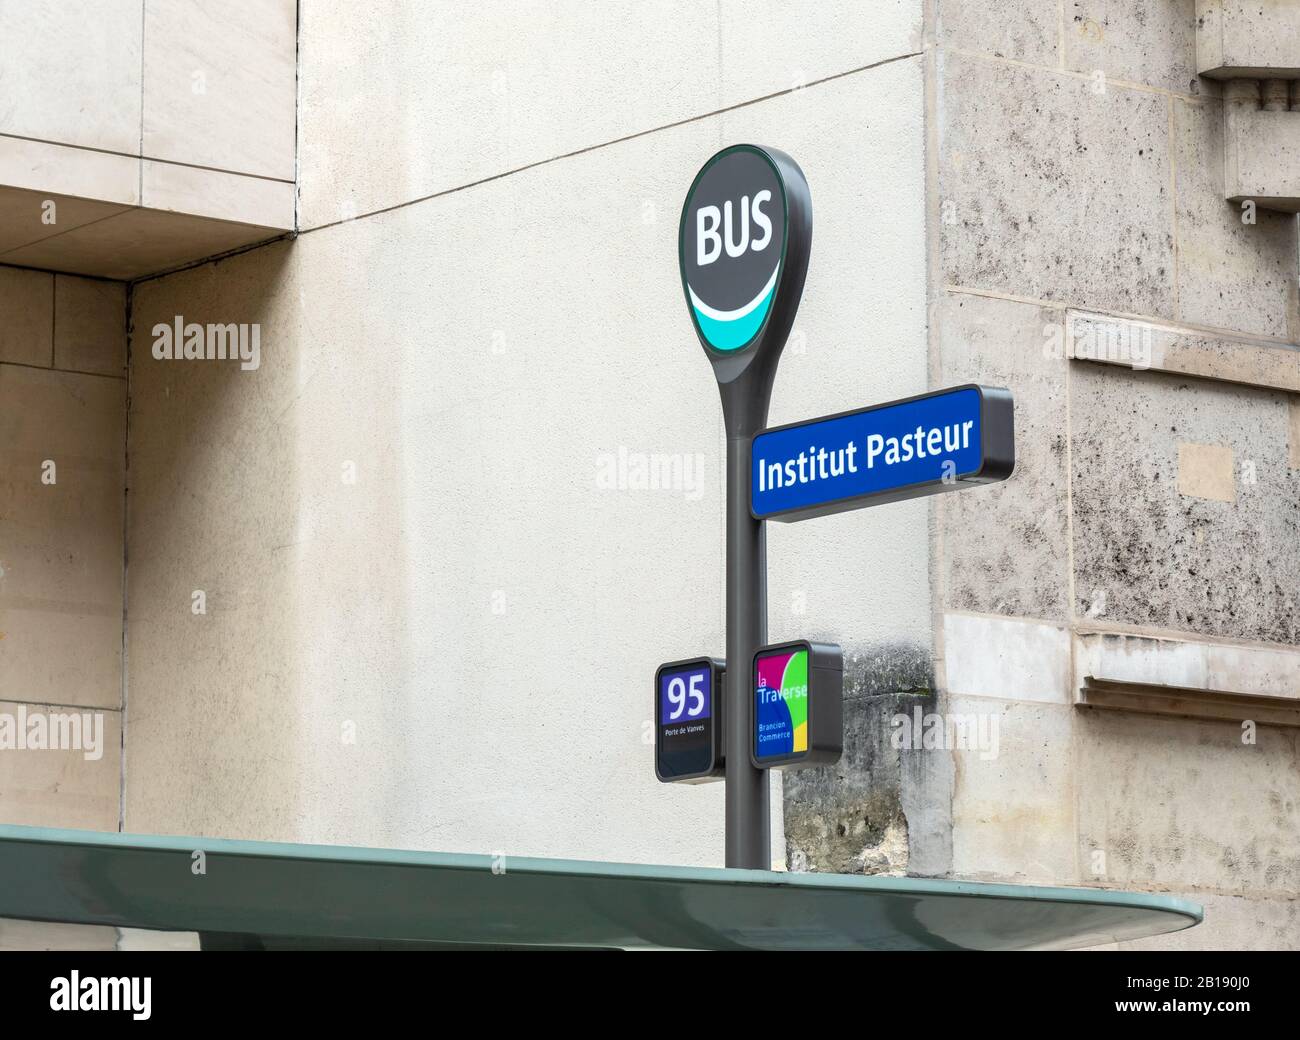 Pasteur institute bus stop sign in Paris Stock Photo